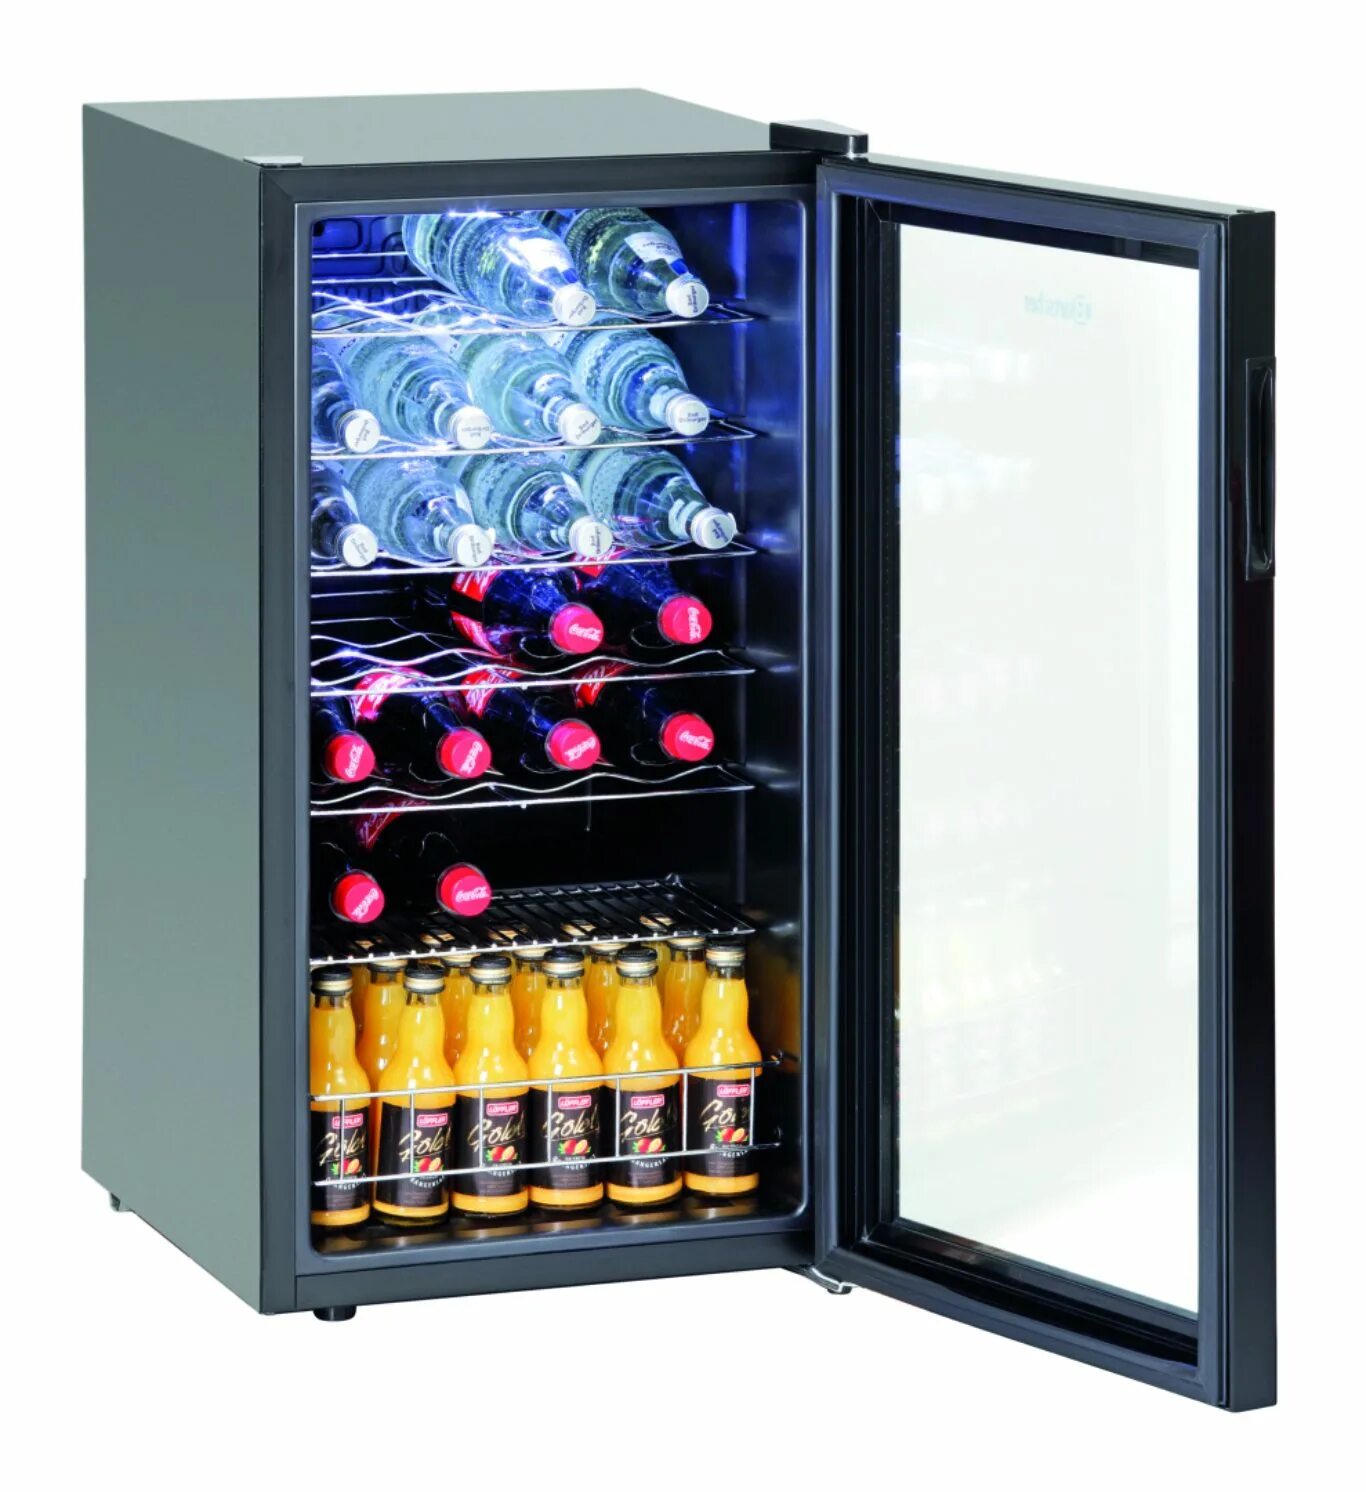 Шкаф Bartscher 700082g. Холодильник для напитков mings87. Шкаф холодильник для вина s183. Холодильный шкаф Mini Bartscher 700089. Холодильник для напитков б у